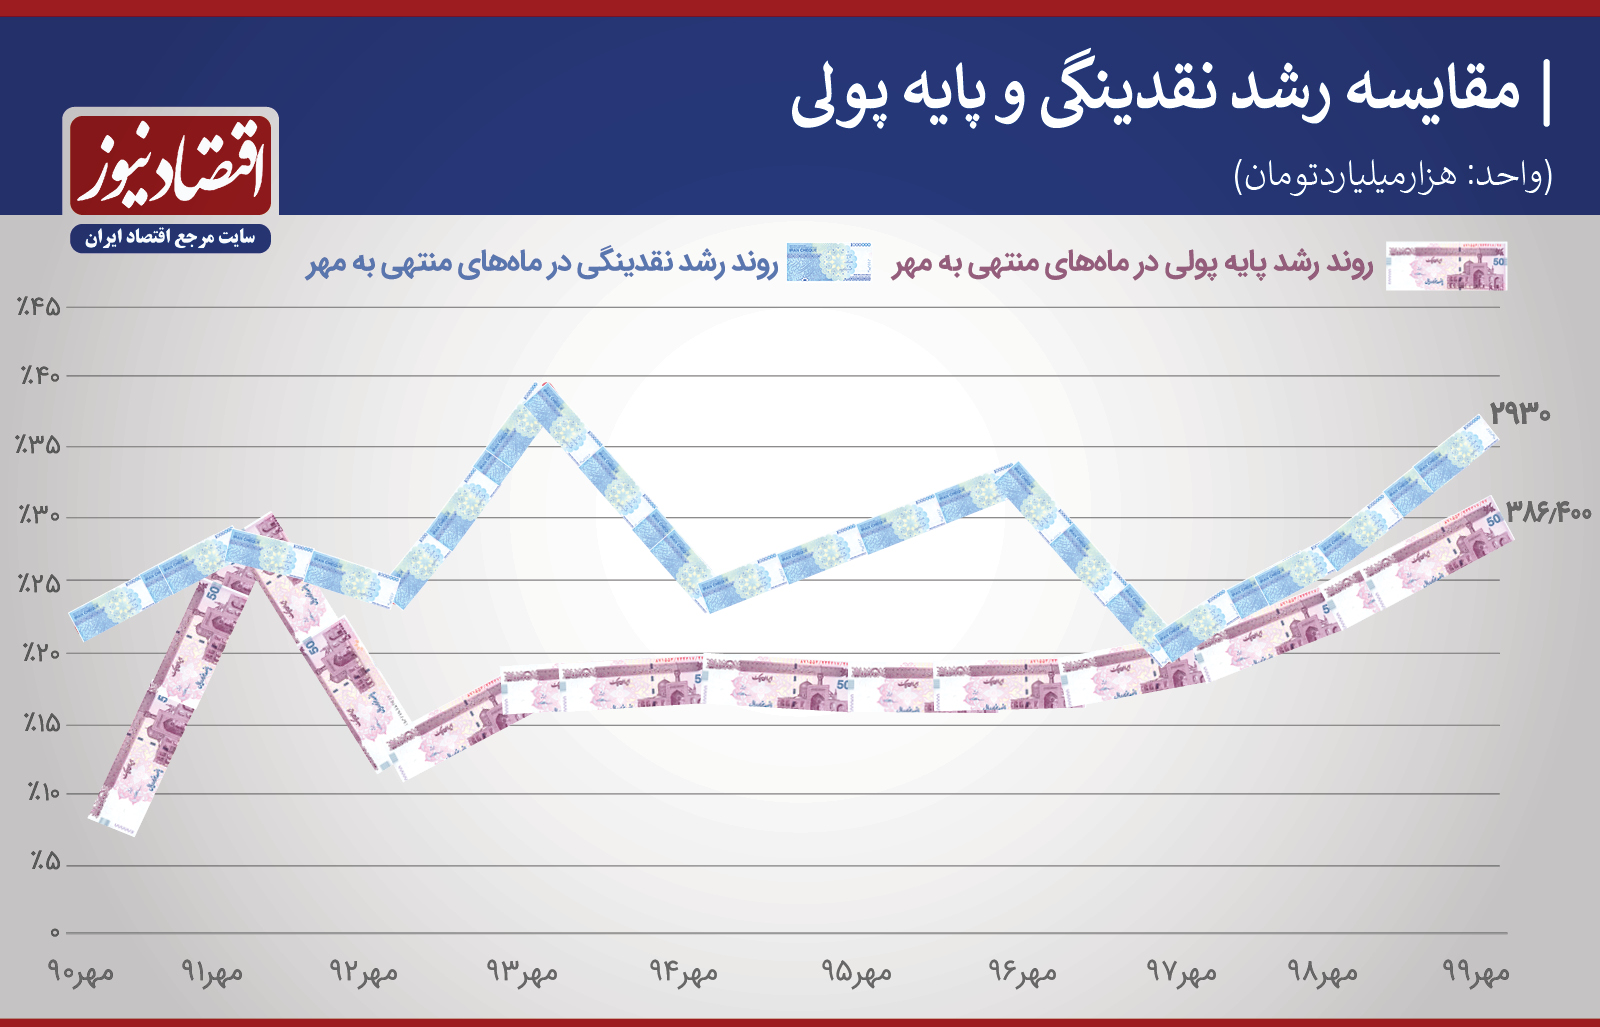 رکورد شکنی رشد چاپ پول در مهر ۹۹+ نمودار